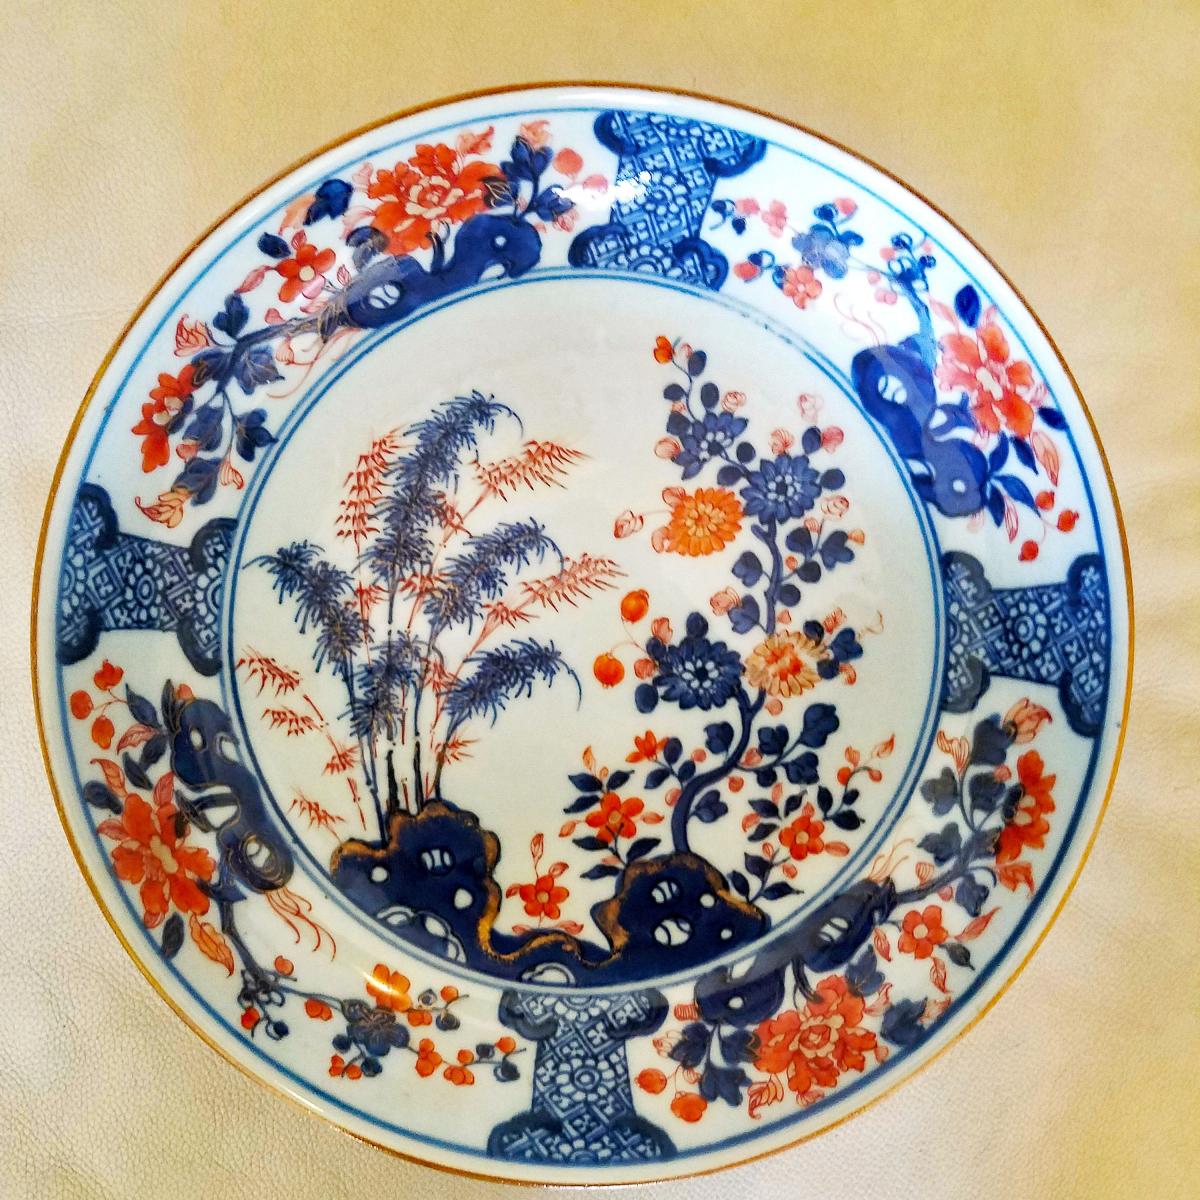 Chinese Export Porcelain Imari  Saucer Dish, Circa 1770-80.